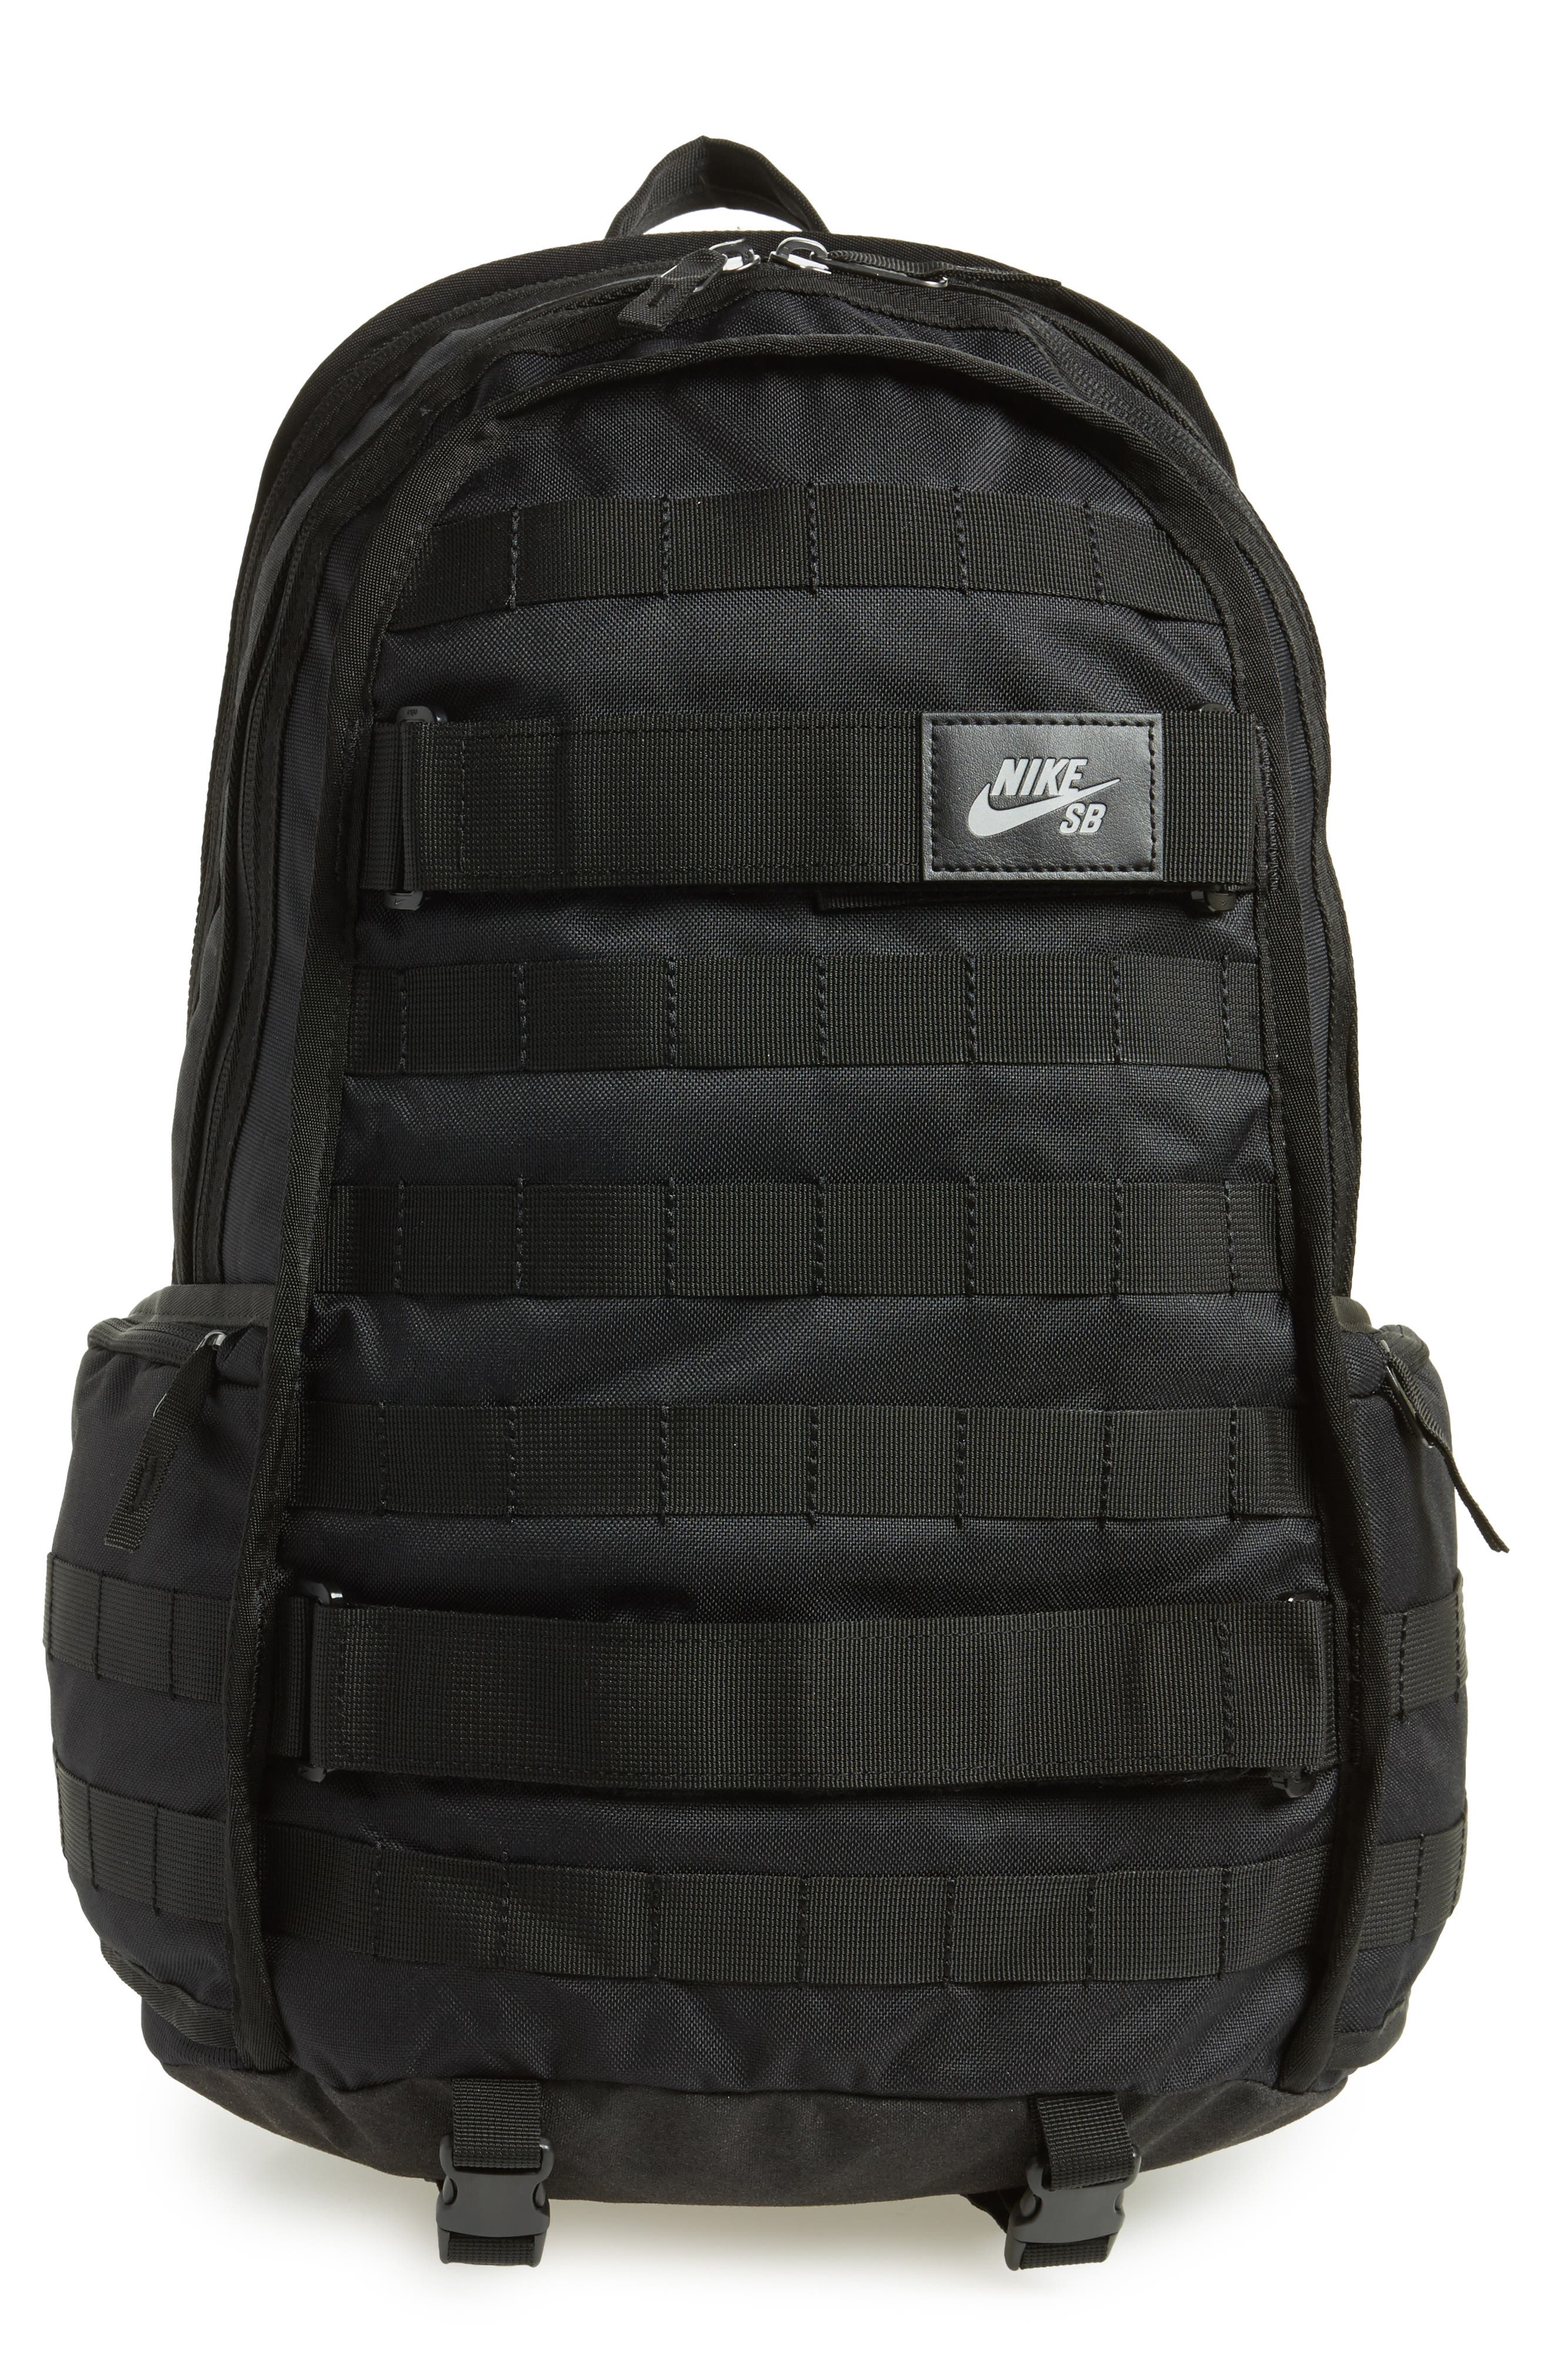 nike sb rpm backpack 2015